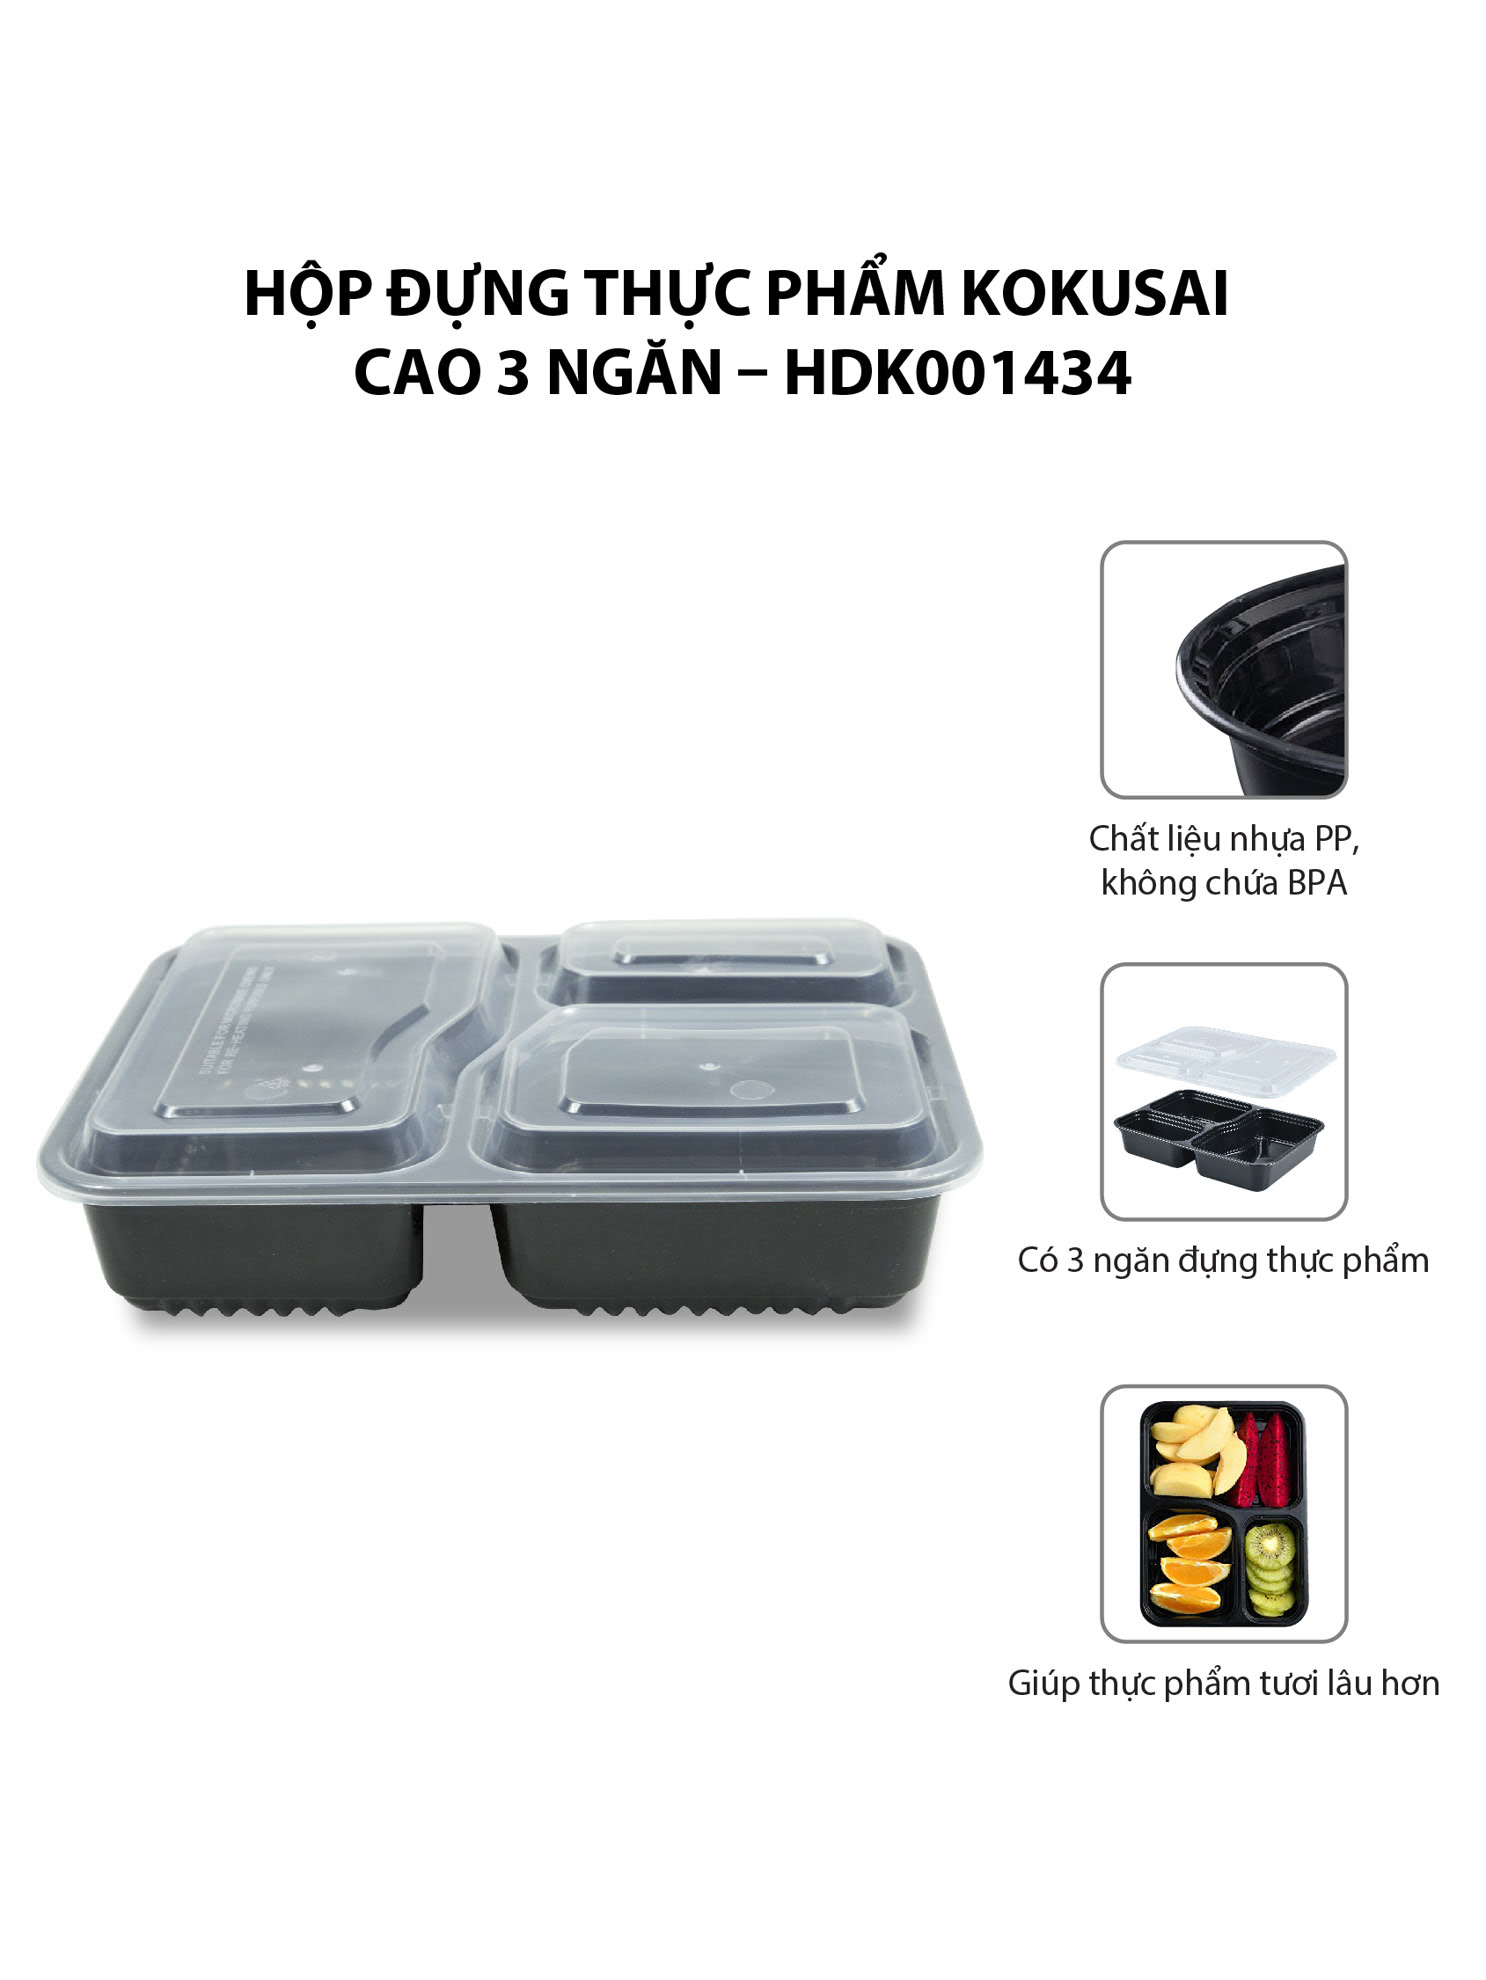 Hộp đựng thực phẩm Kokusai Cao 3 ngăn – HDK001434 